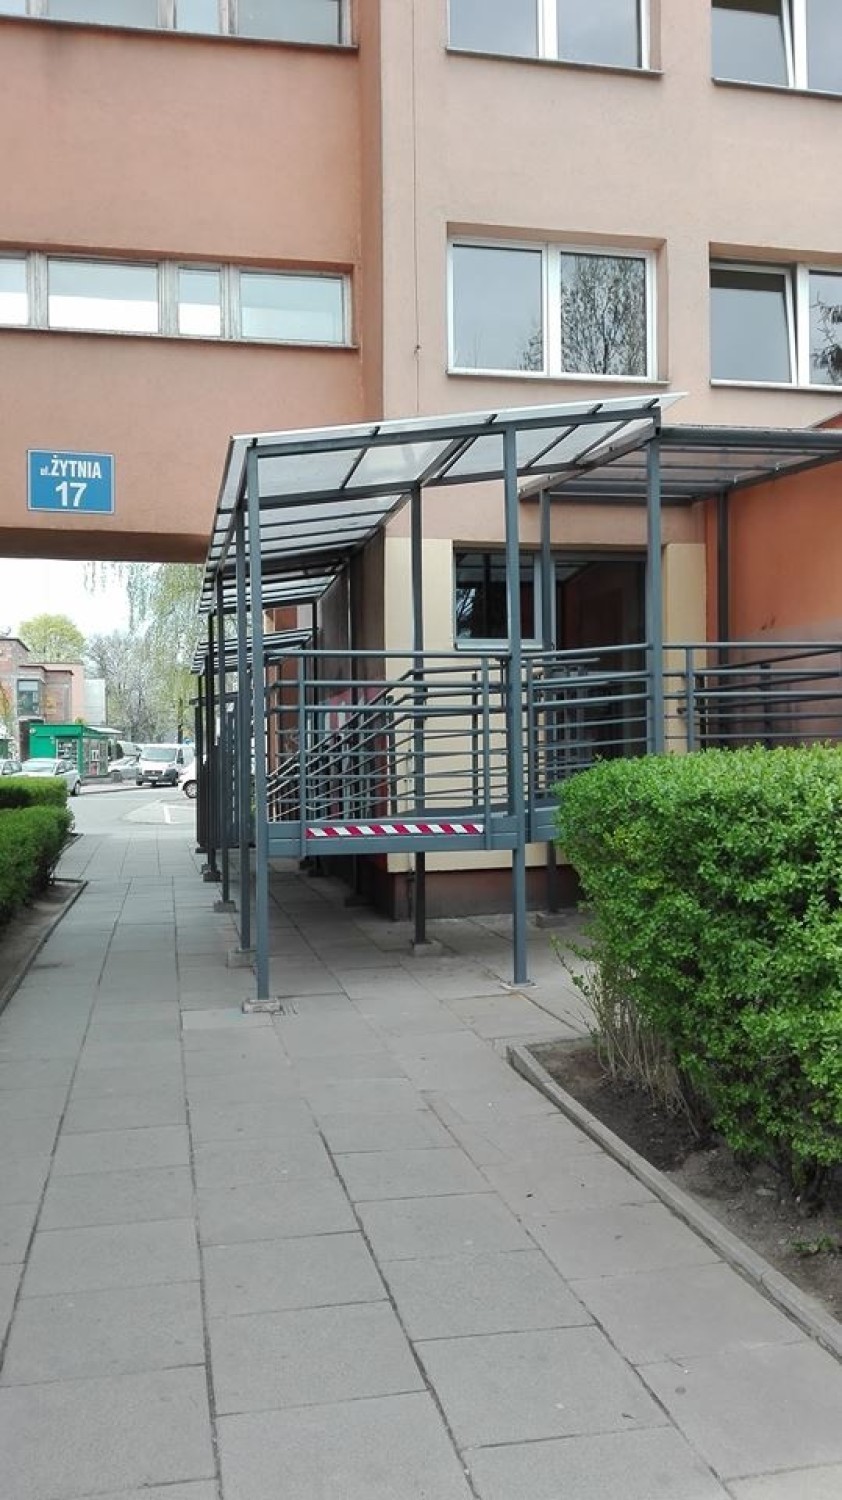 Kraków. Podjazd dla niepełnosprawnych utrudnił im życie